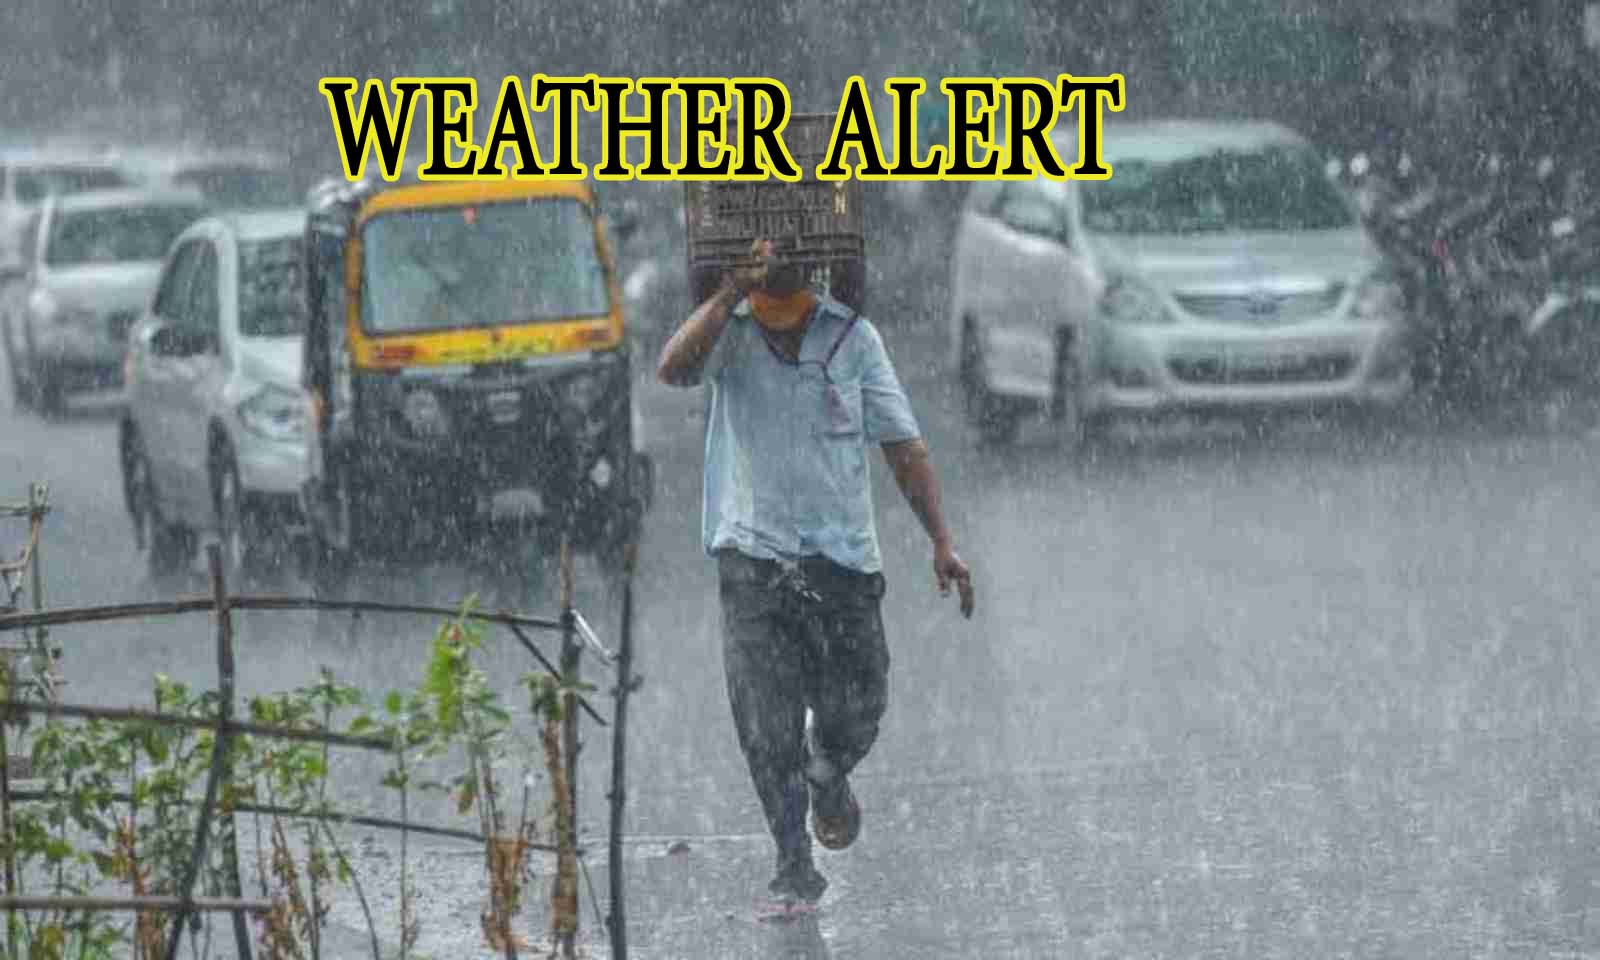 मौसम विभाग की ओर से जारी की गई चेतावनी, लखनऊ समेत प्रदेश के अन्य जिलों में बारिश के आसार